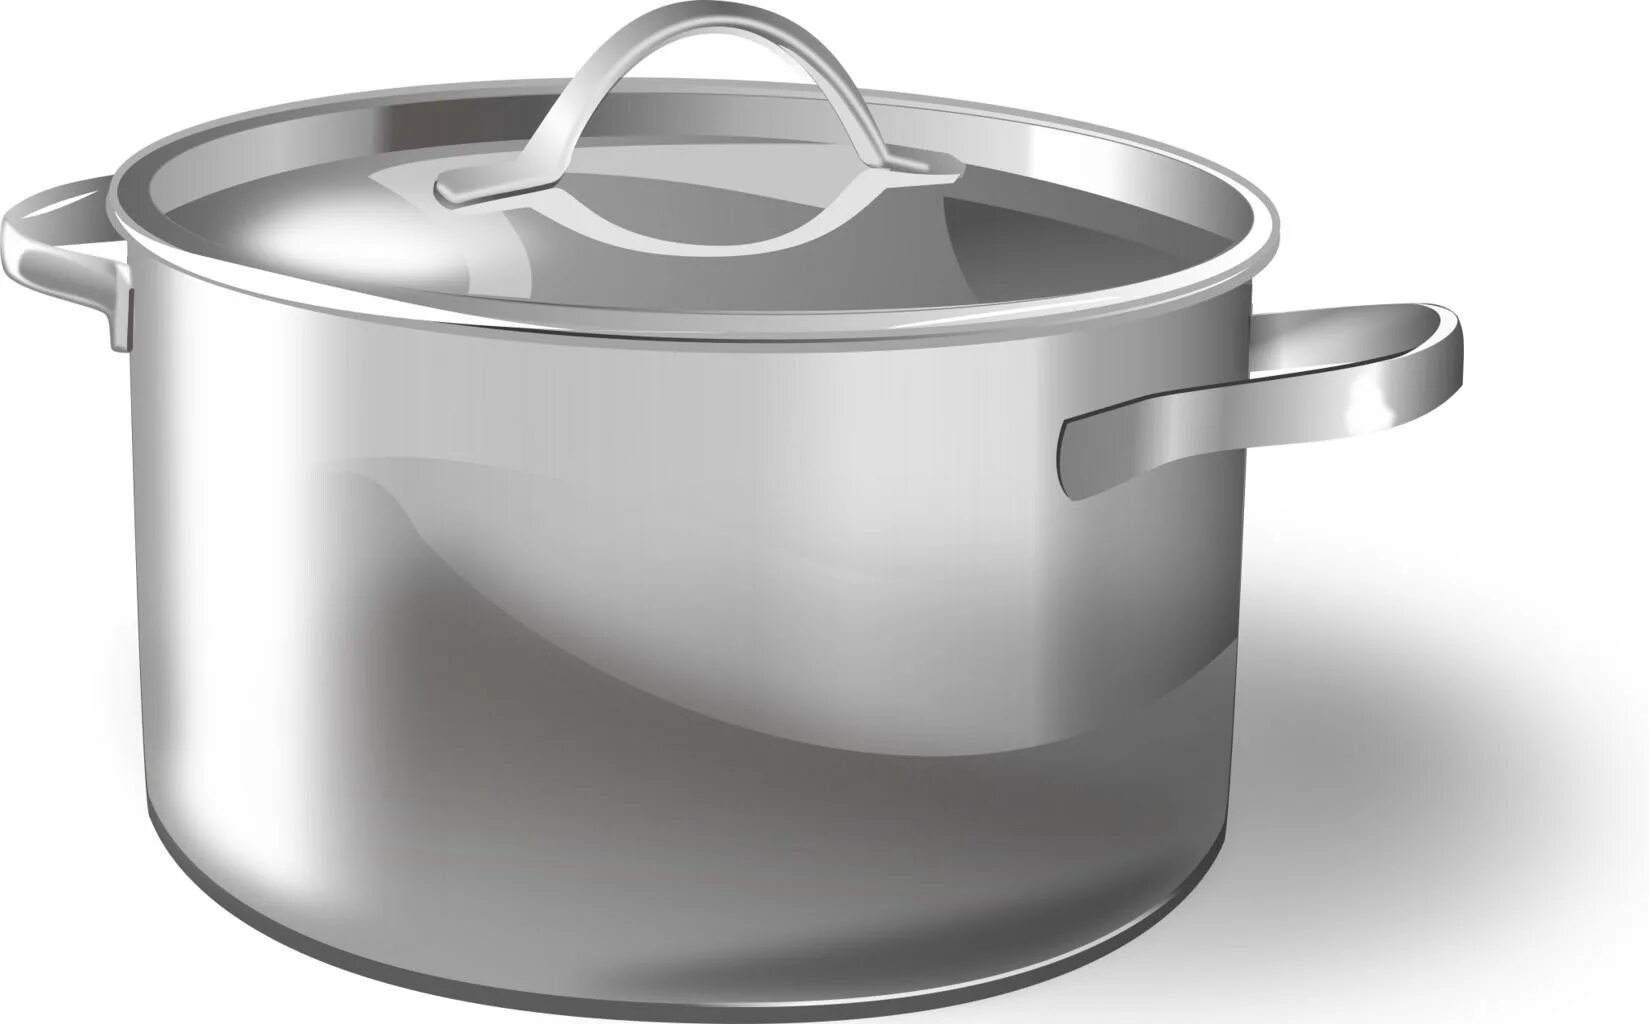 Cooking pot. 1с755 кастрюля. Кастрюля для детей. Кастрюля из металла. Металлическая посуда на прозрачном фоне.